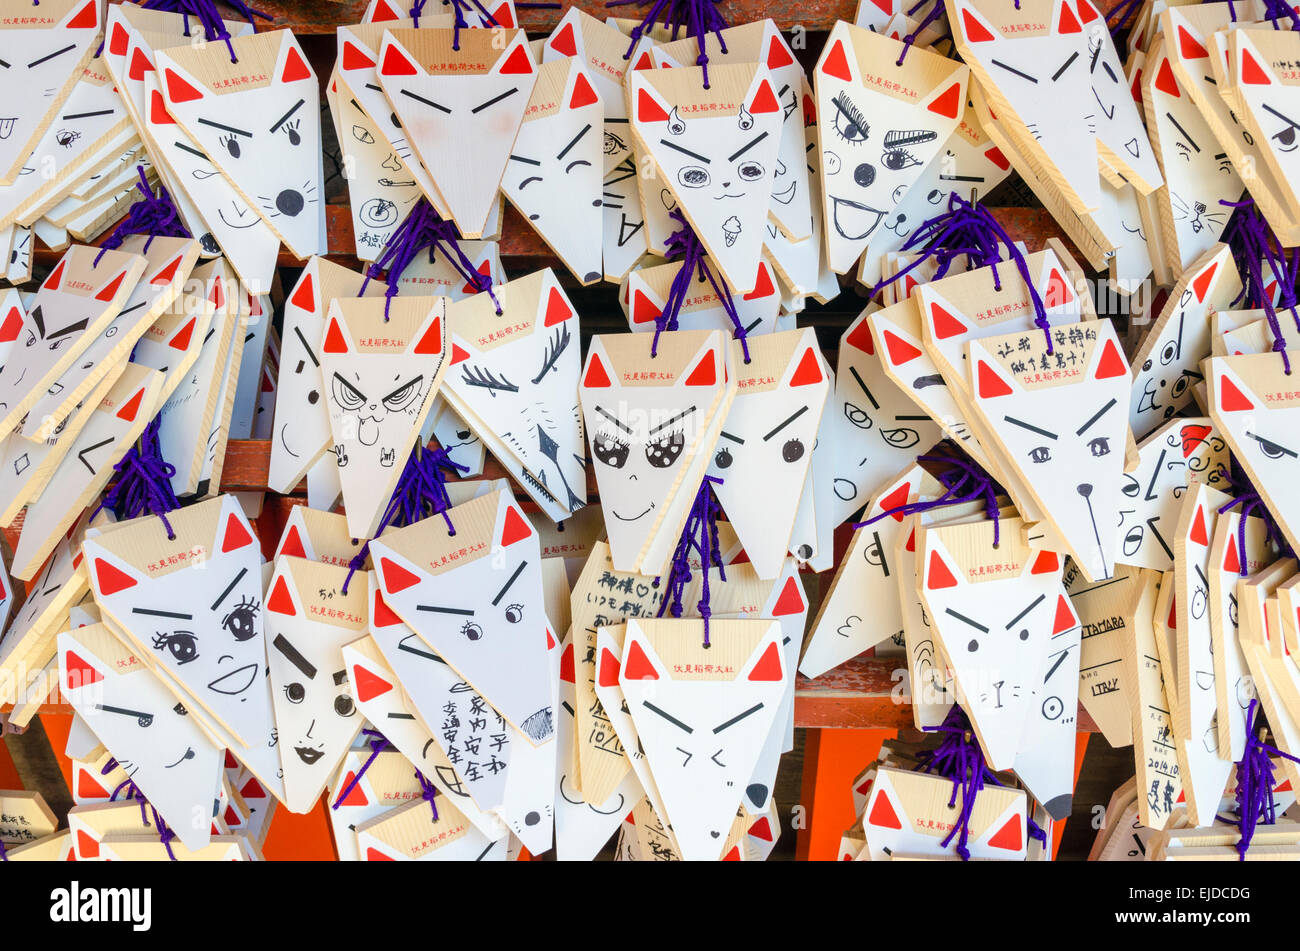 Fox head shaped wooden prayers and wishes at the Fushimi Inari Shrine, Kyoto, Japan Stock Photo